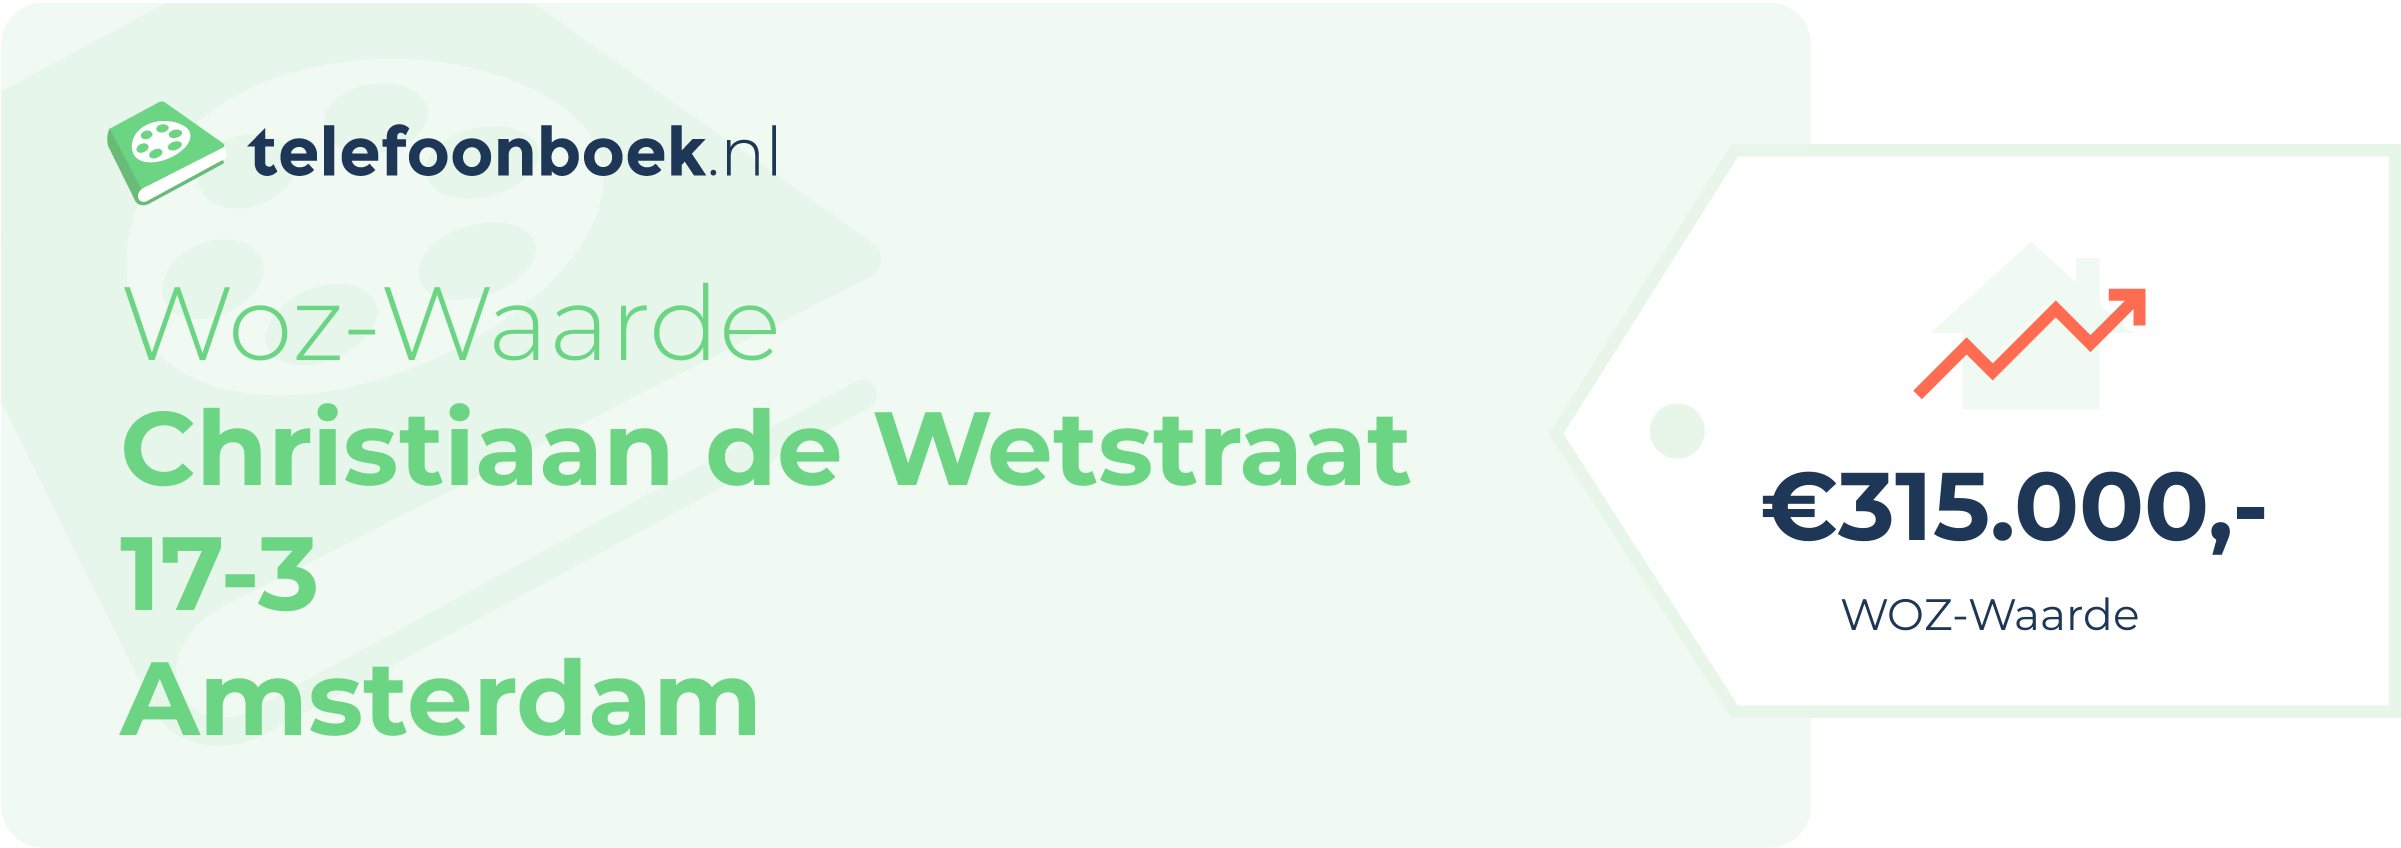 WOZ-waarde Christiaan De Wetstraat 17-3 Amsterdam